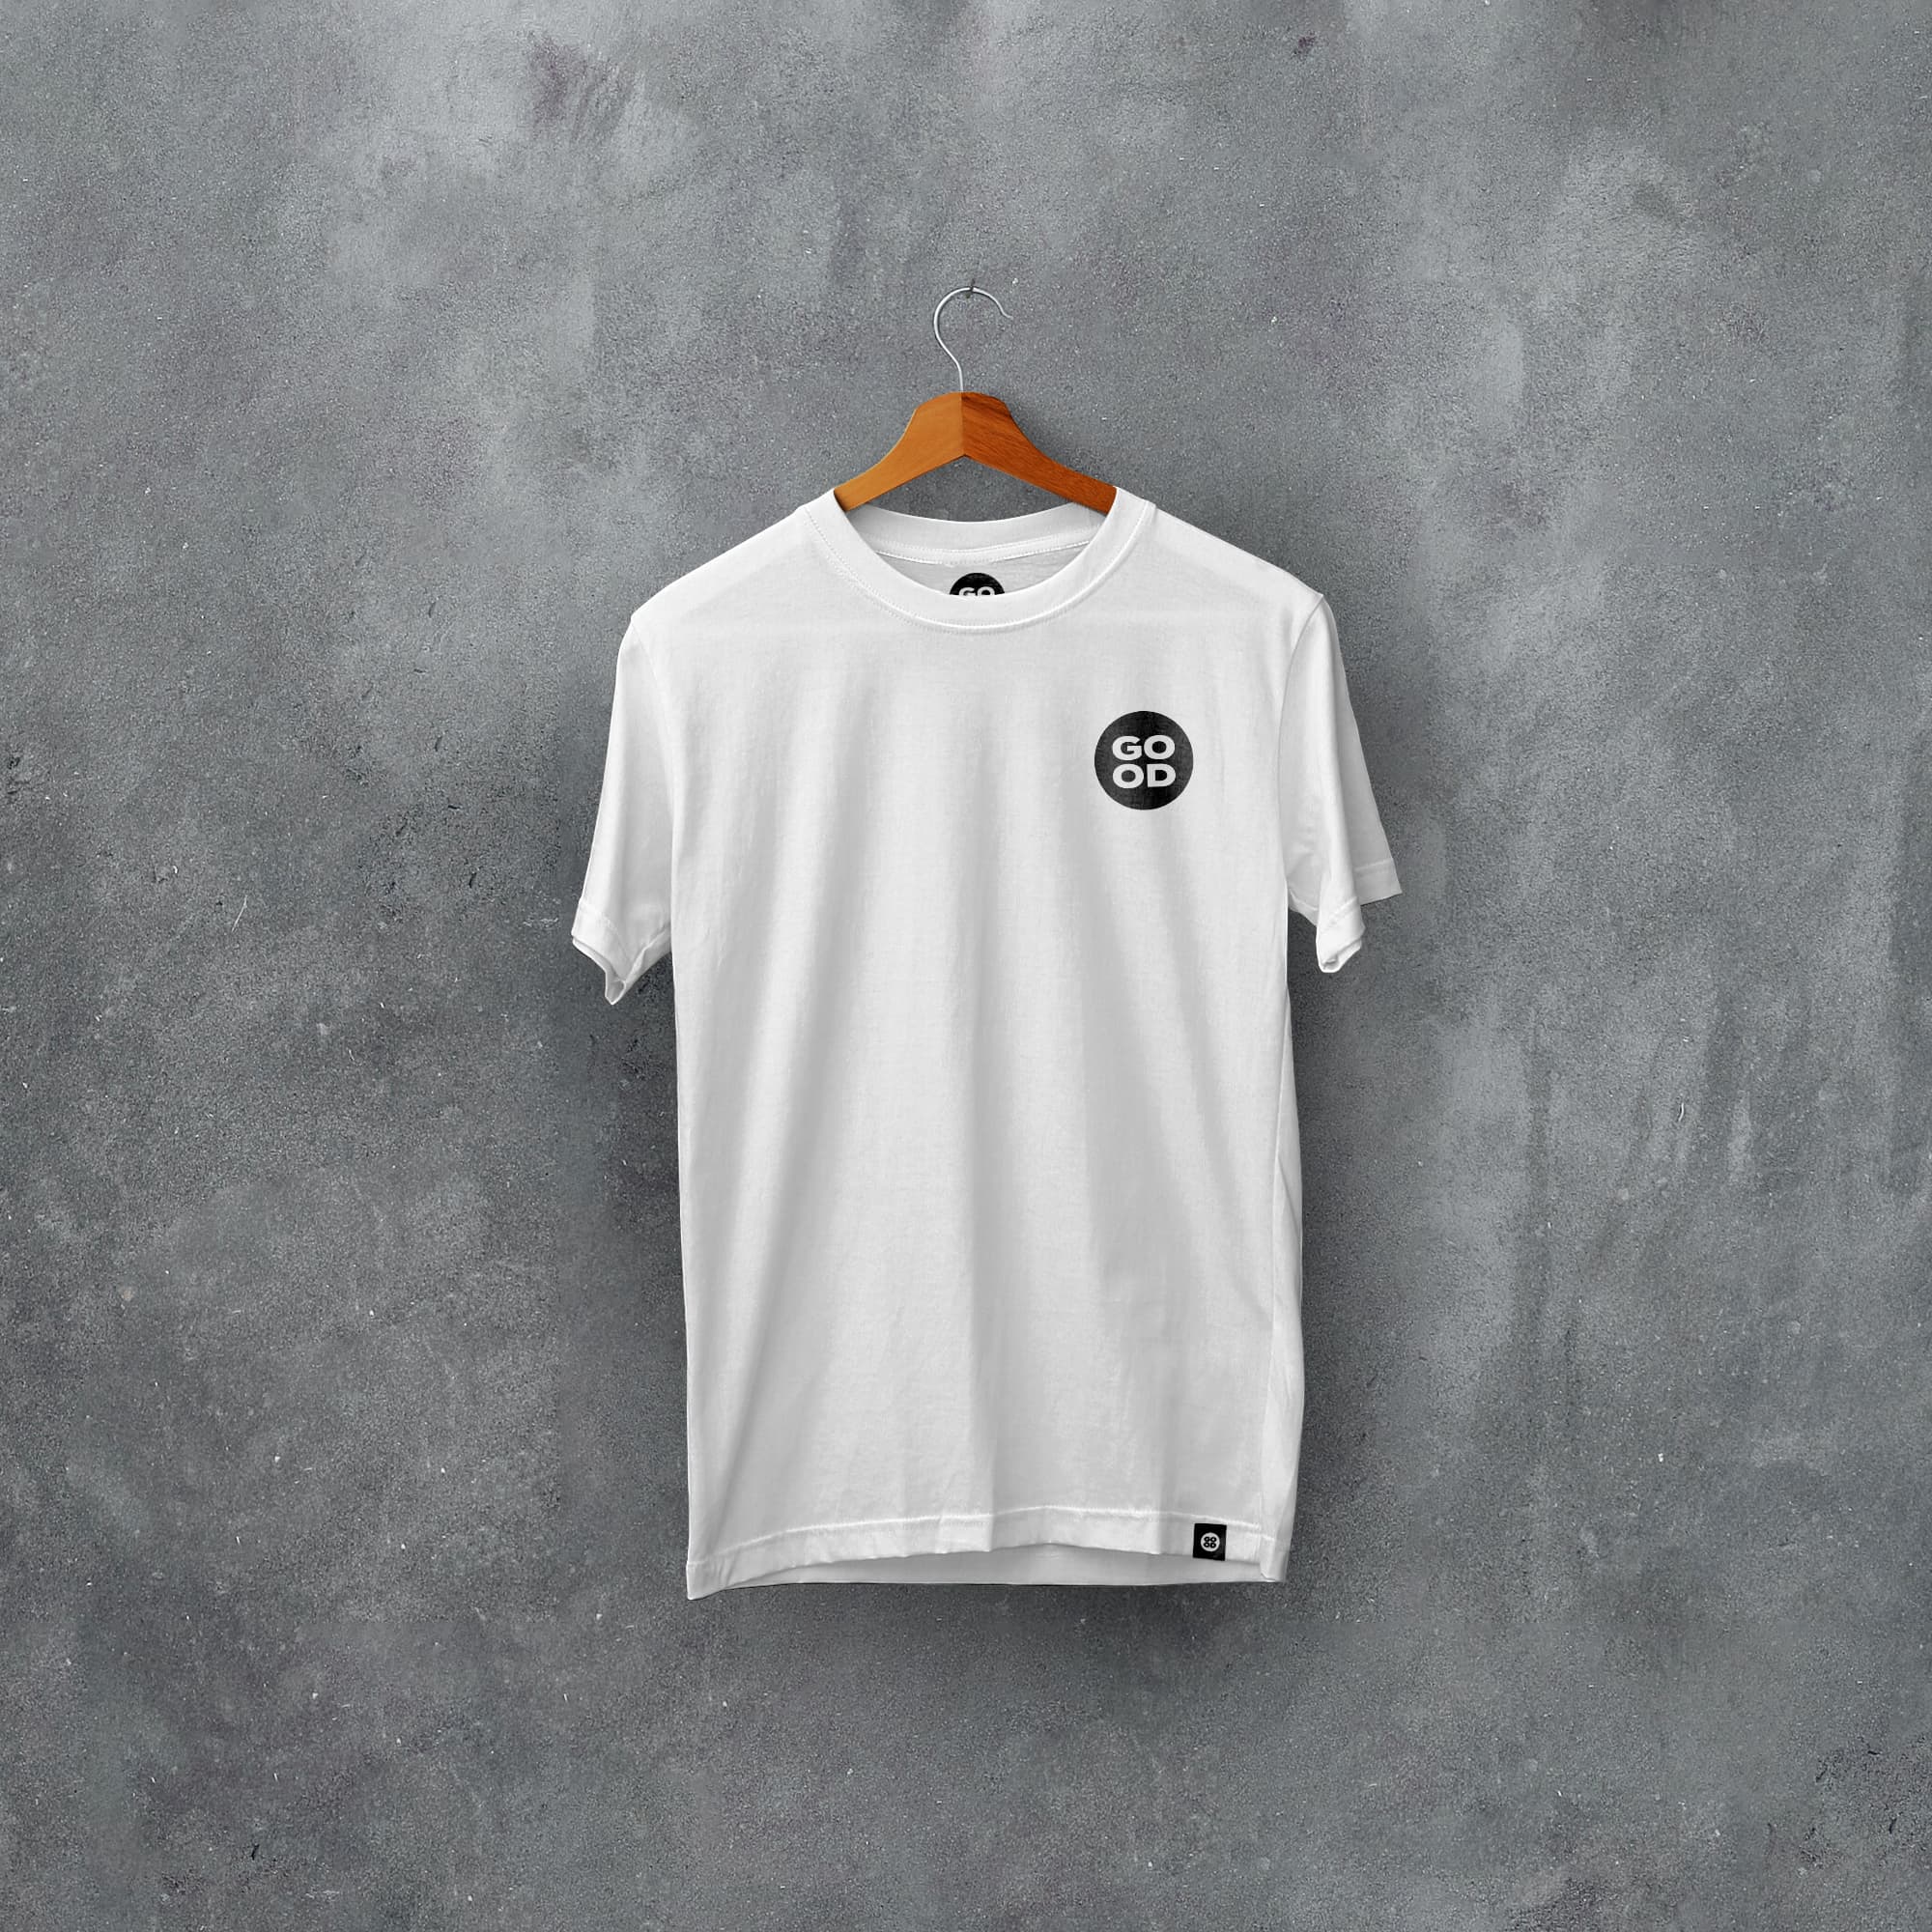 Villa Classic Kits Football T-Shirt